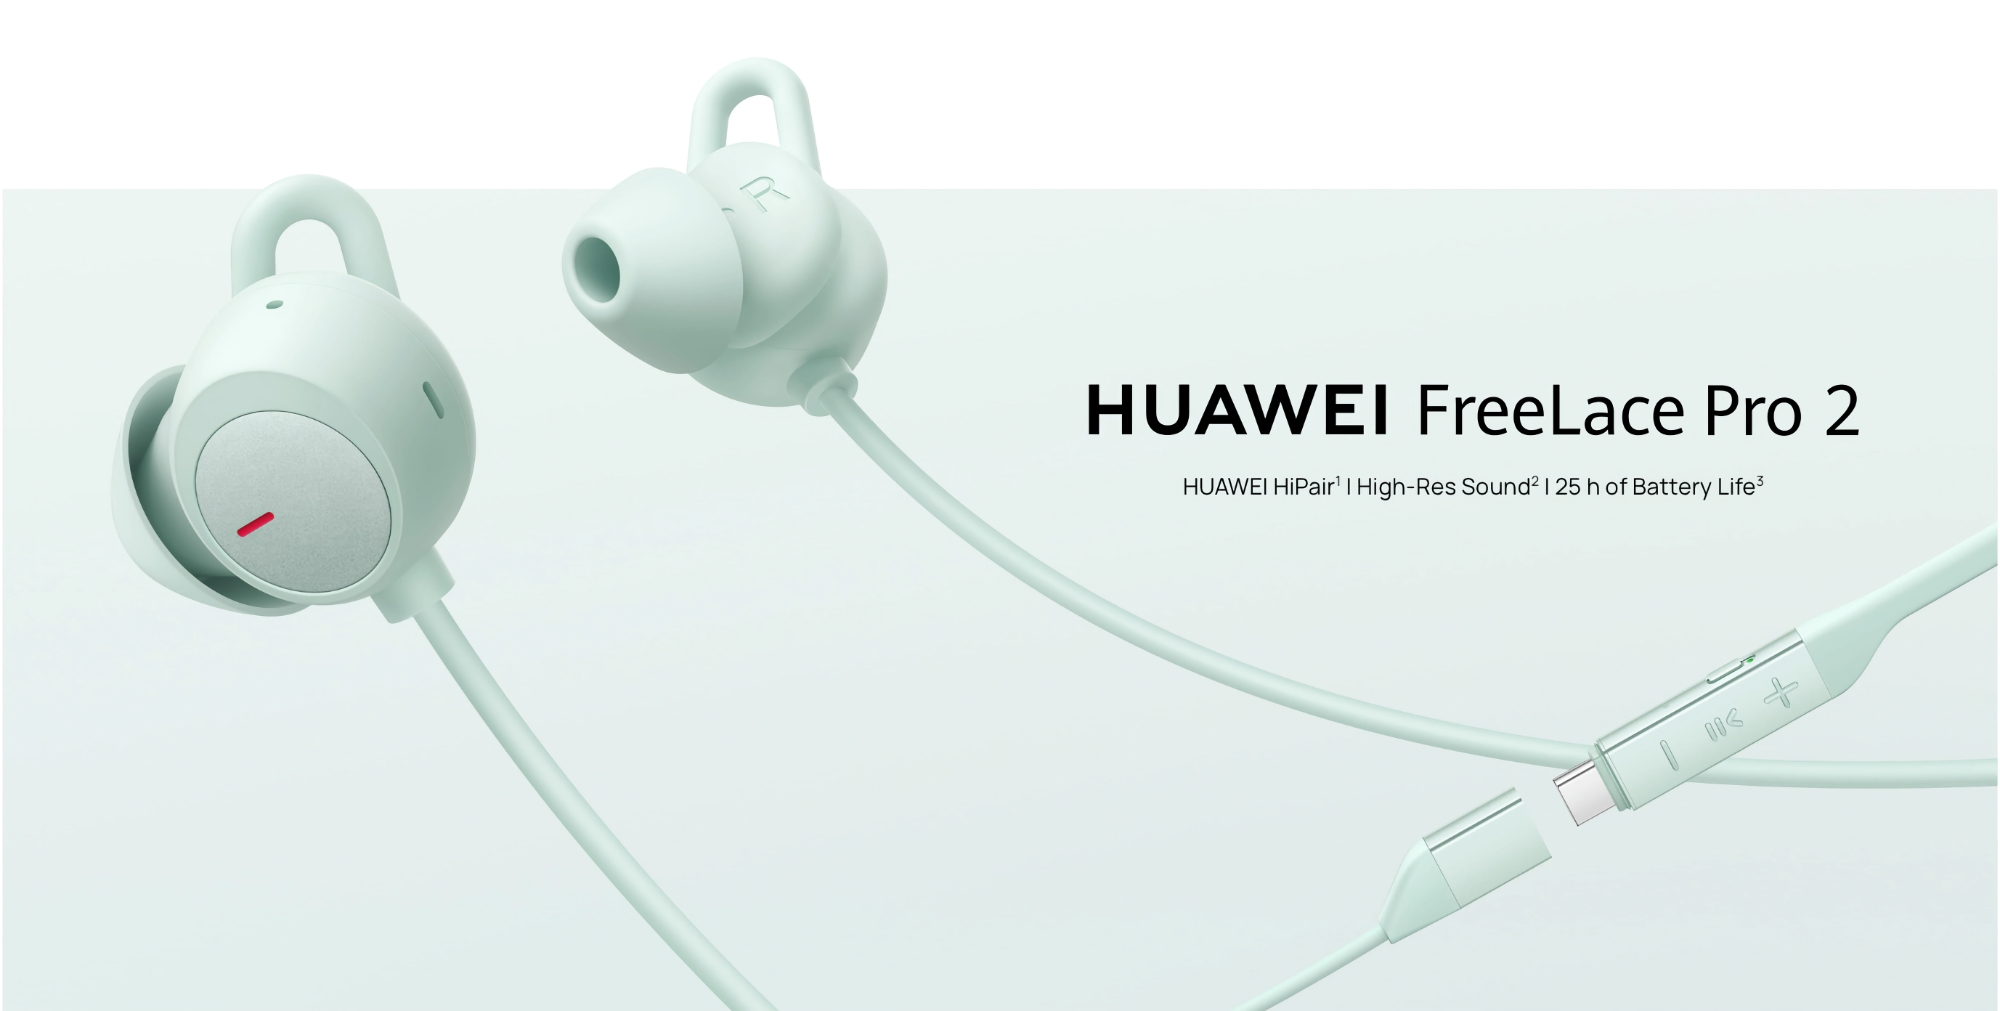 Huawei har lanserat FreeLace Pro 2 med ANC och upp till 25 timmars batteritid på den globala marknaden